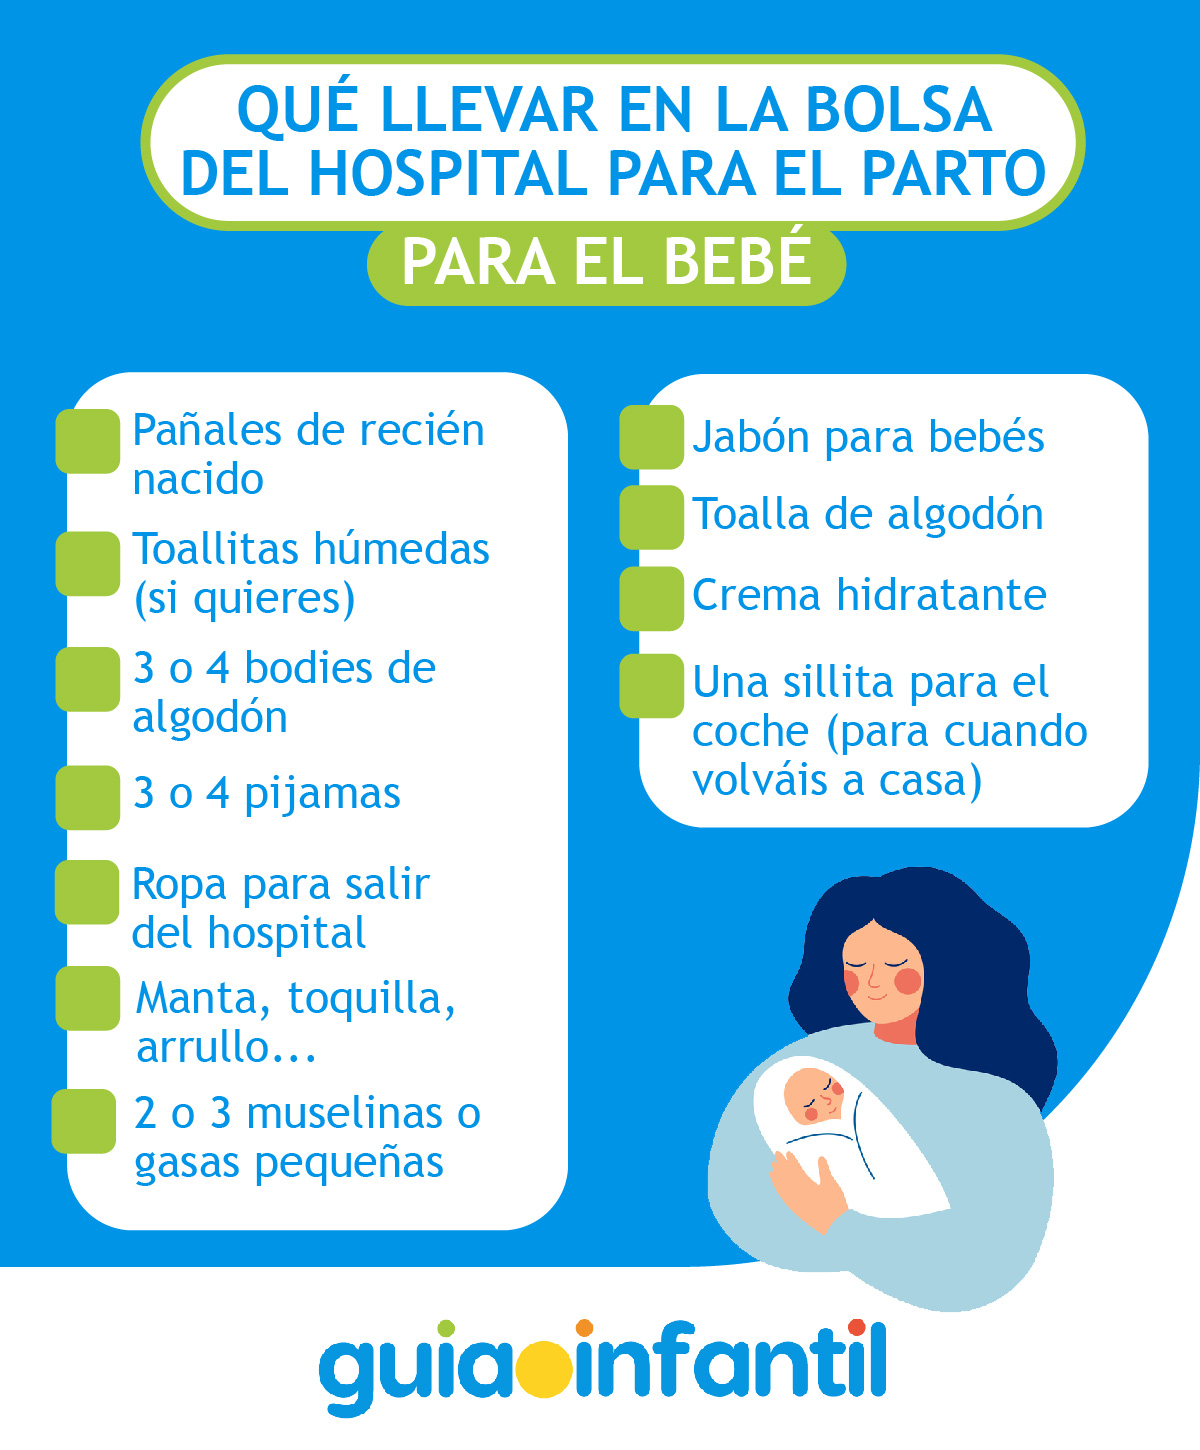 Maleta hospital para el parto  Lista de qué incluir en ella - LetsFamily